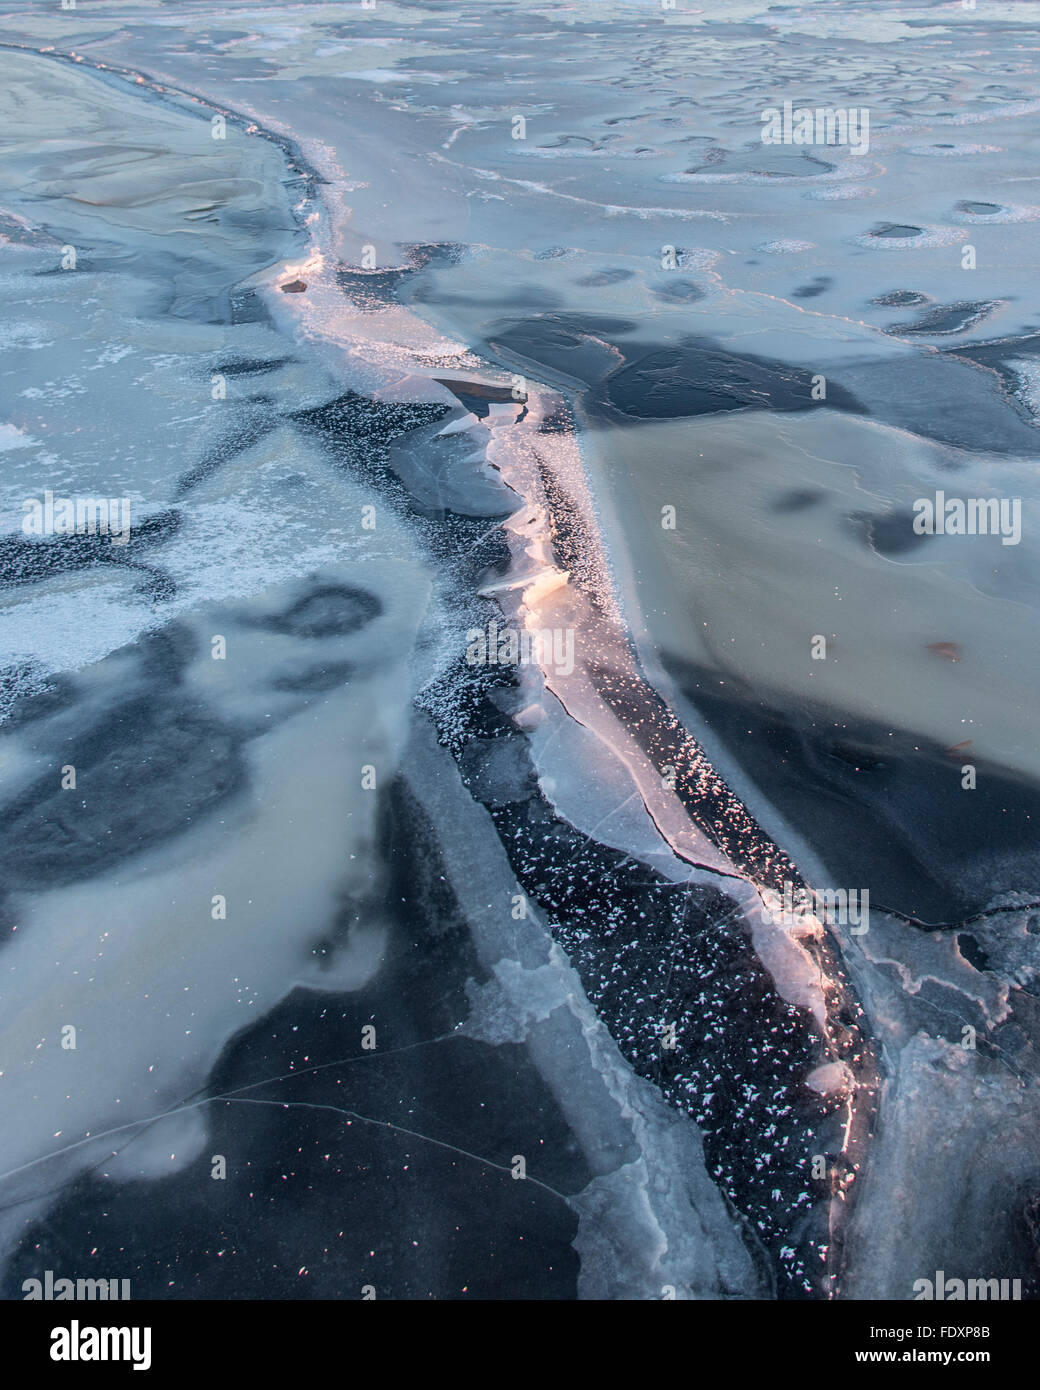 La formazione di crack sul ghiaccio molto sottile del grande lago Butte des morts. Foto Stock